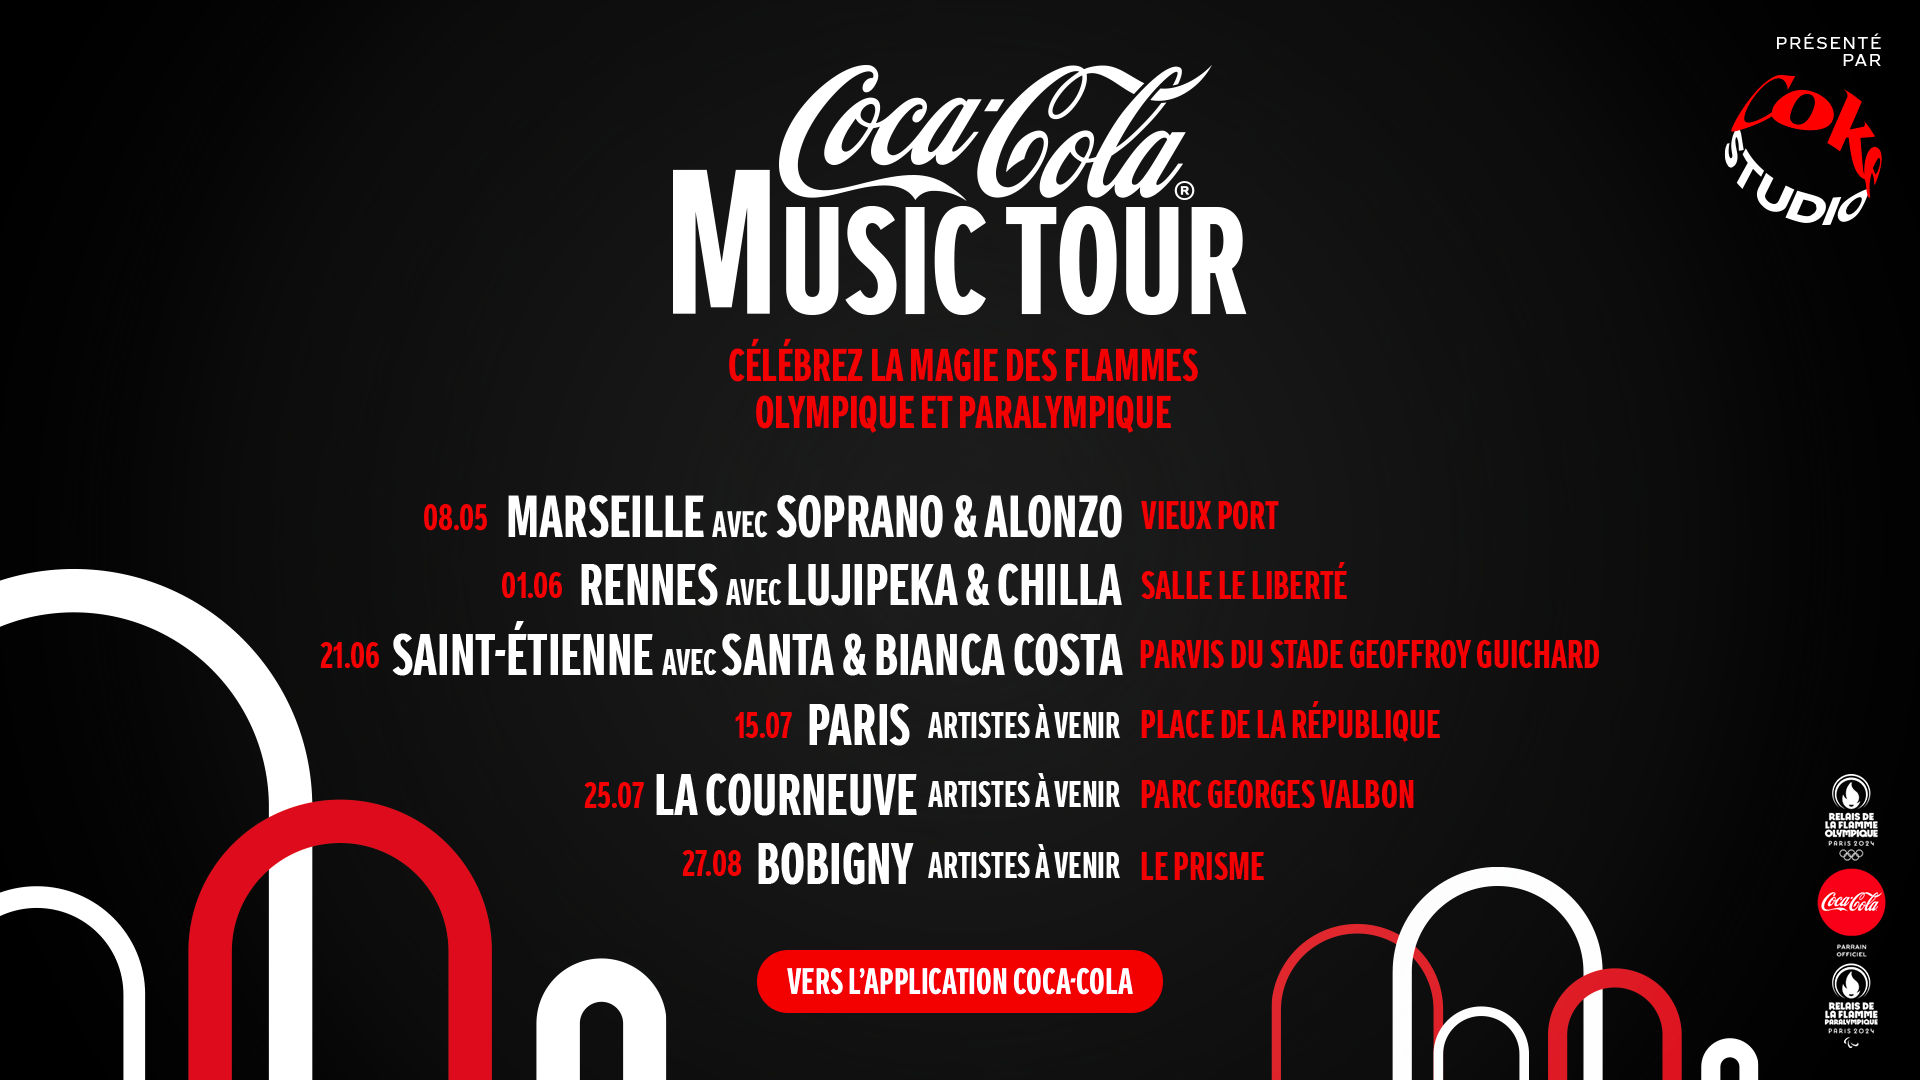 Coca-Cola® Music Tour